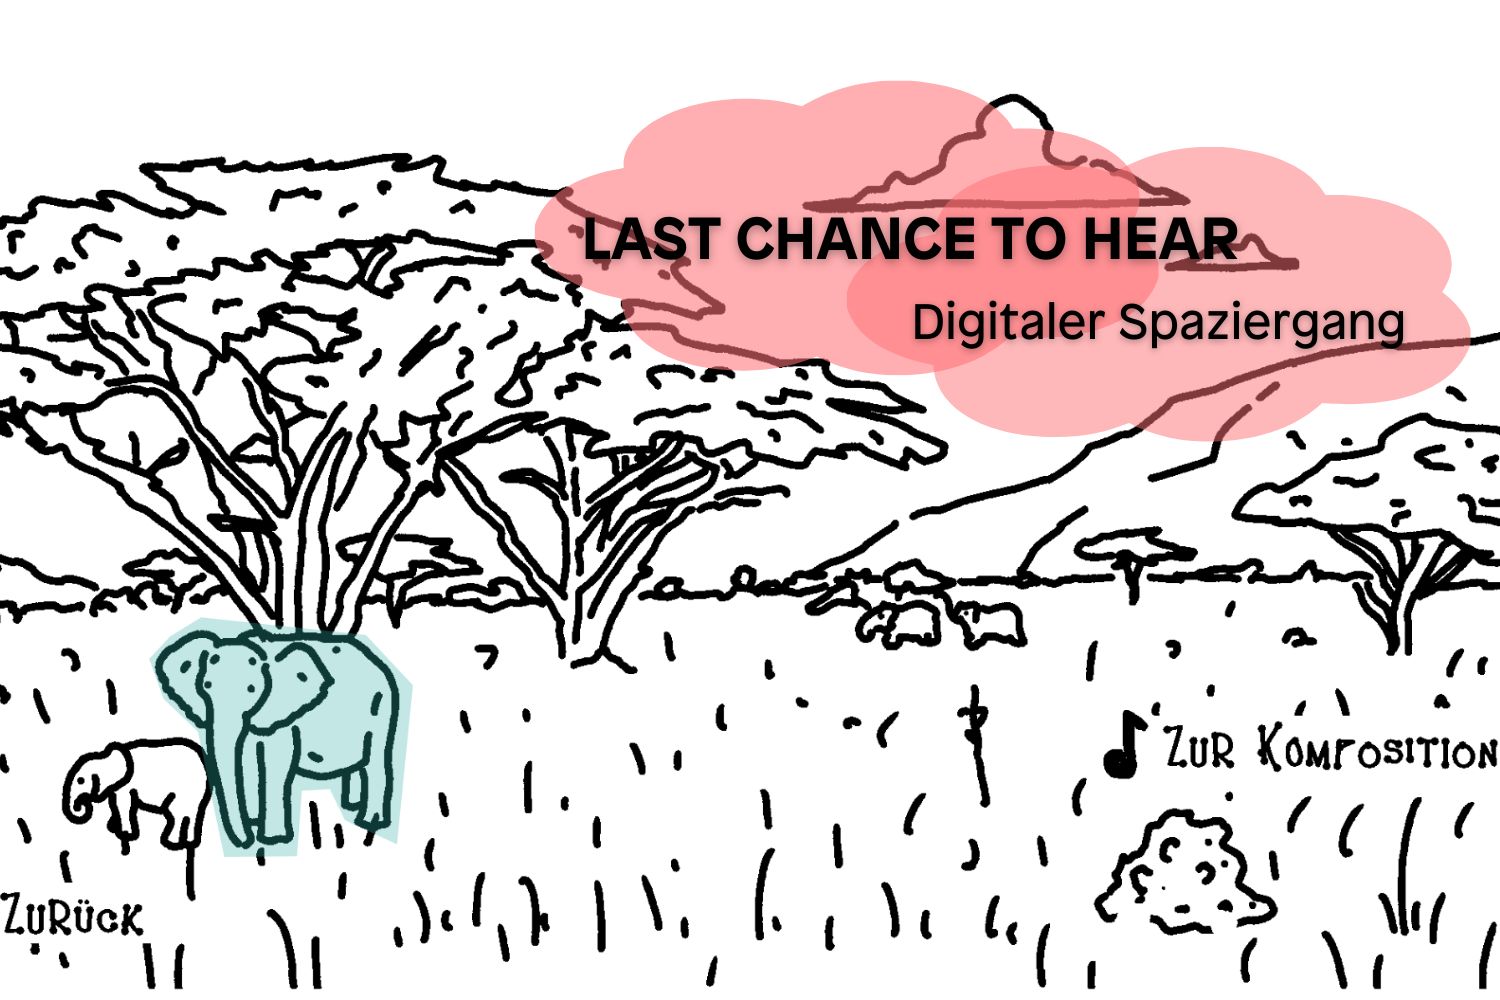 Bild - LAST CHANCE TO HEAR  - Ein Digitaler Spaziergang